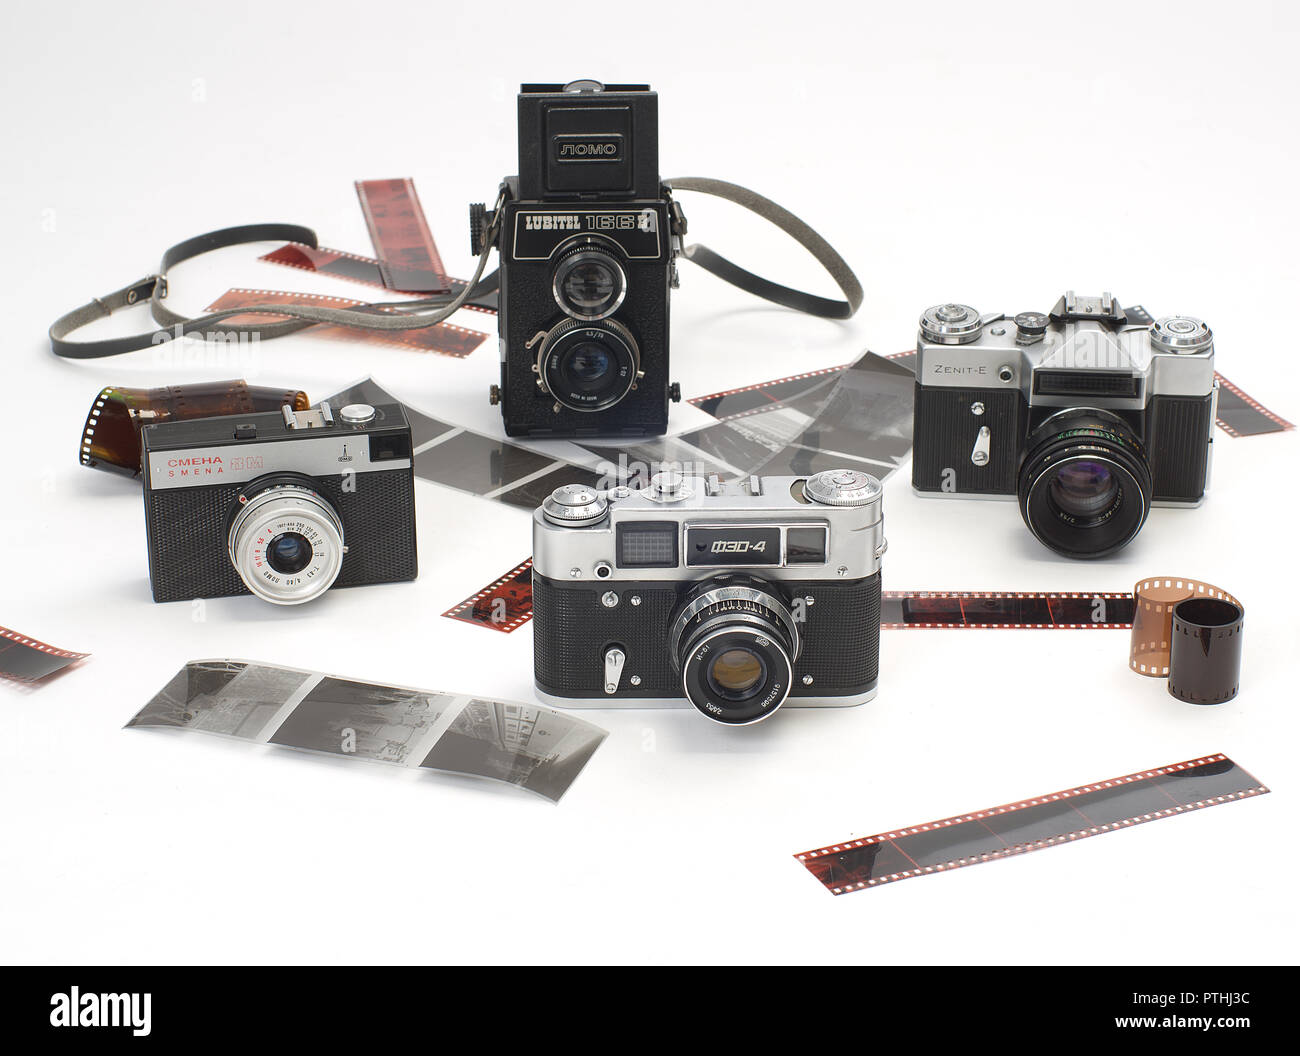 Le fotocamere antiche: Lubitel 166b; Fed 4; Smiena 8M e Zenit - e su uno sfondo bianco e sviluppato 35mm e medio formato photographic Foto Stock